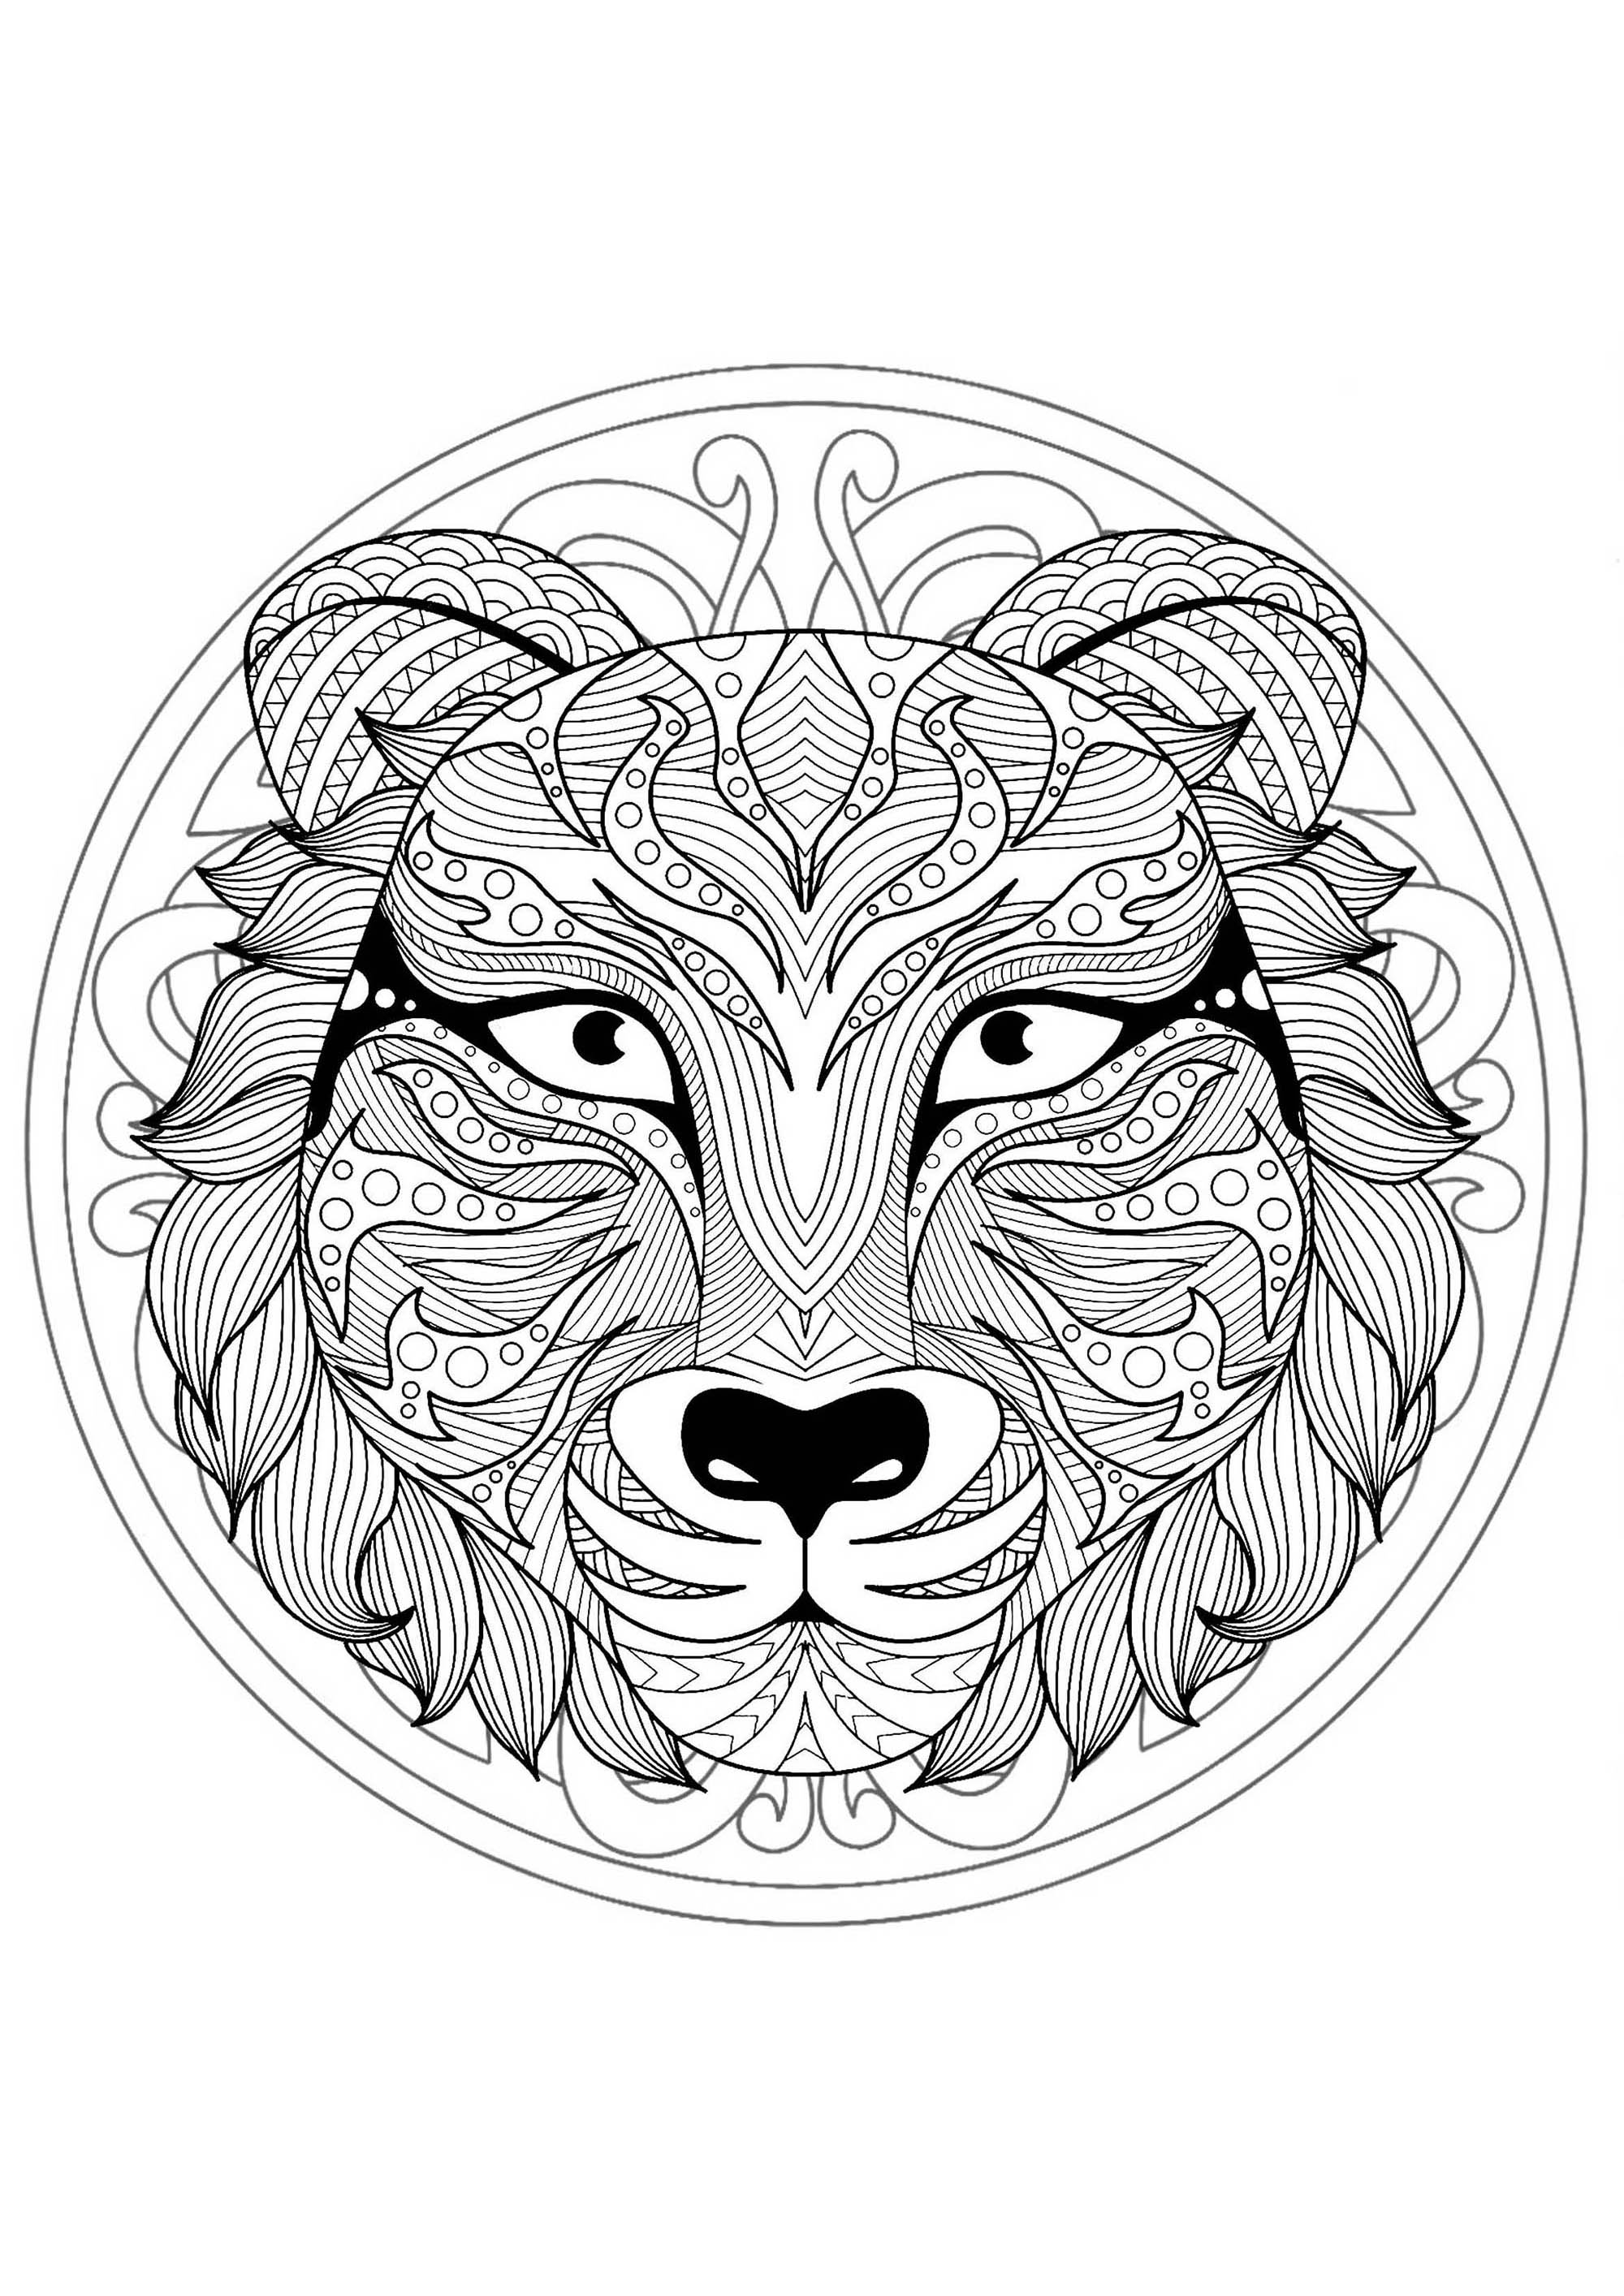 Mandala zum Ausmalen mit sehr schönem Tigerkopf und schönen verschlungenen Mustern im Hintergrund